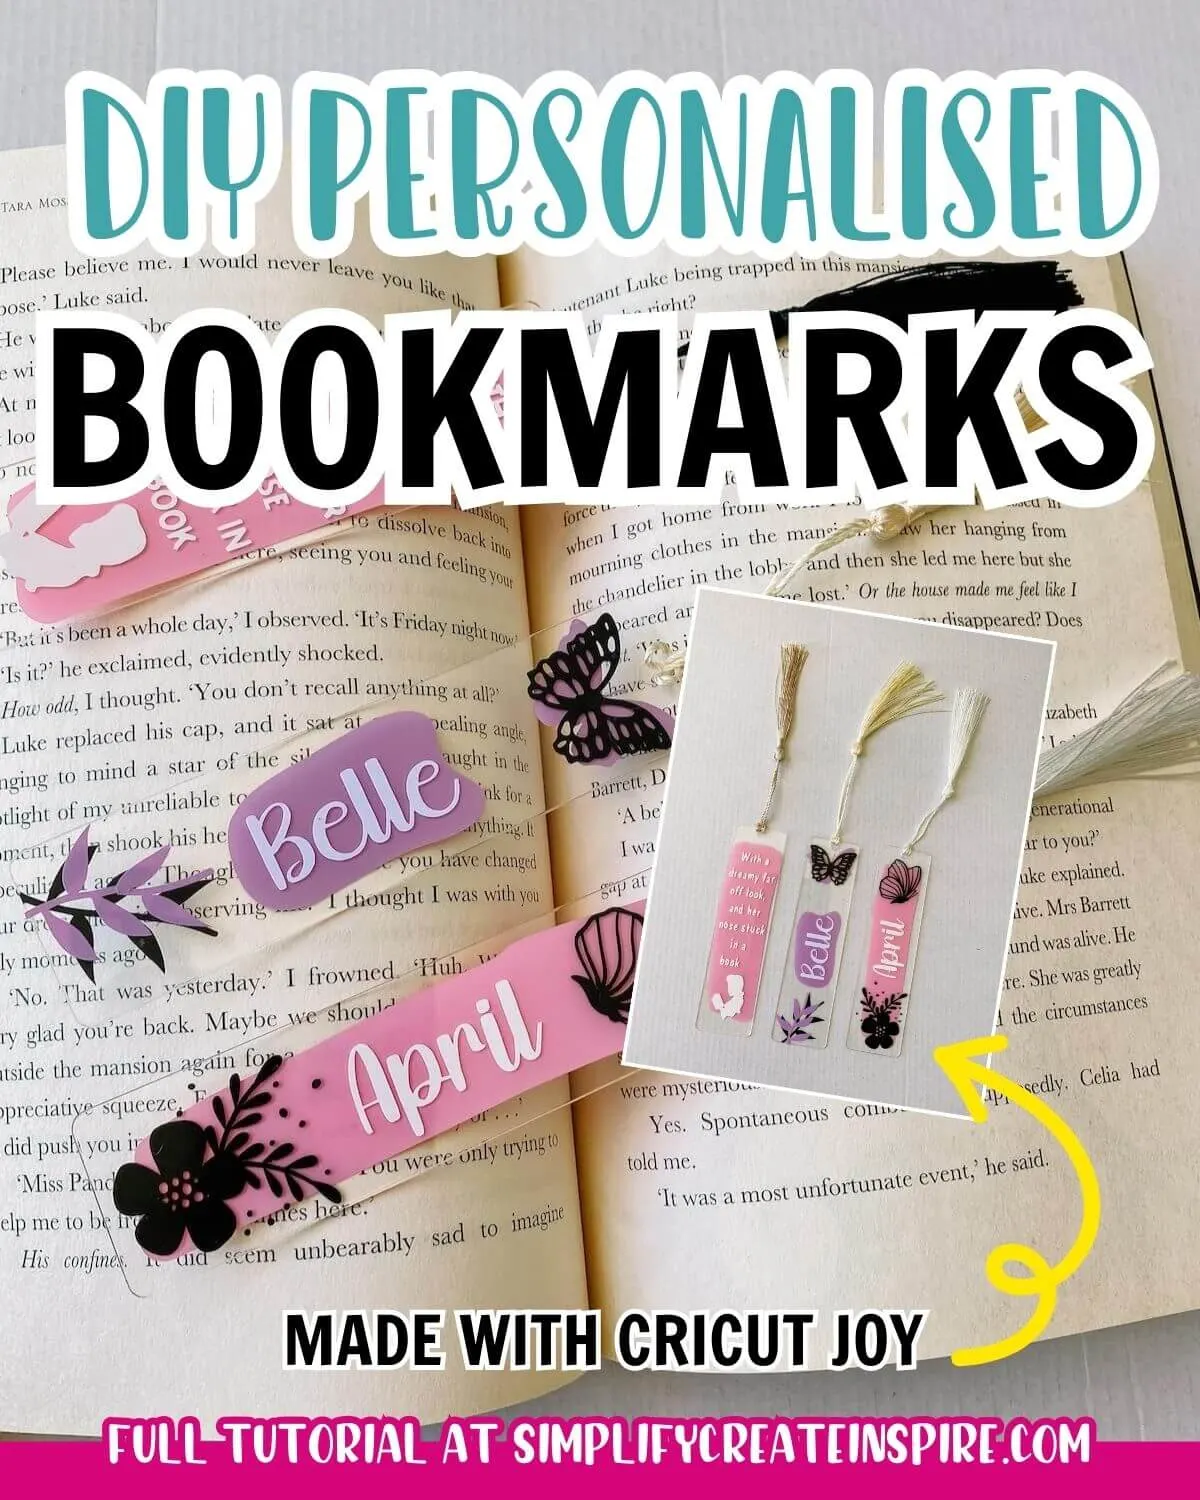 Diy personalised acrylic bookmarks with cricut joy.